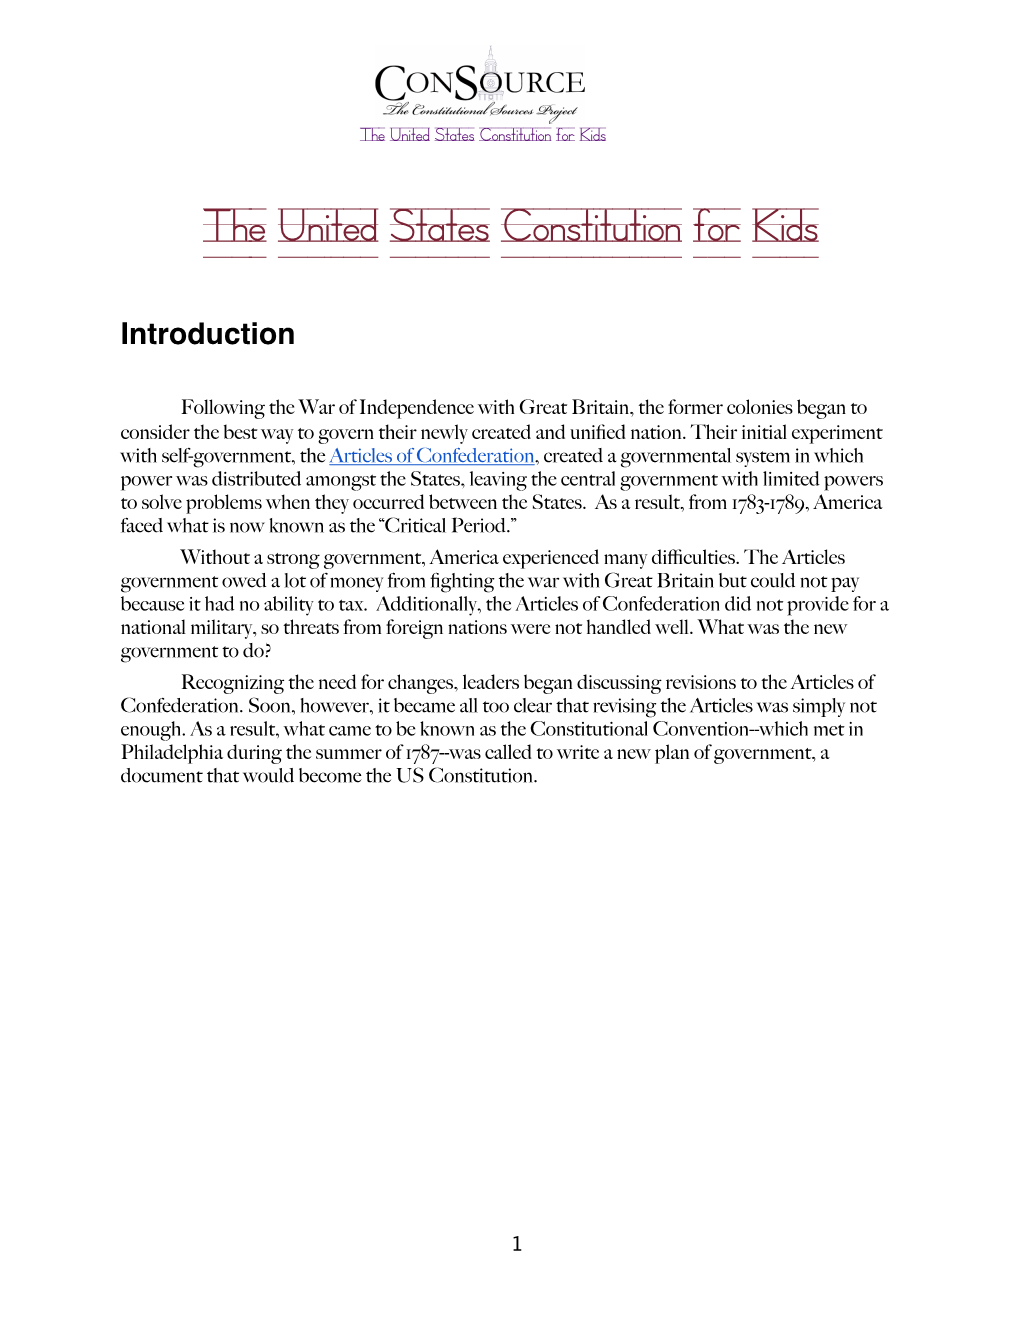 Kids' Constitution